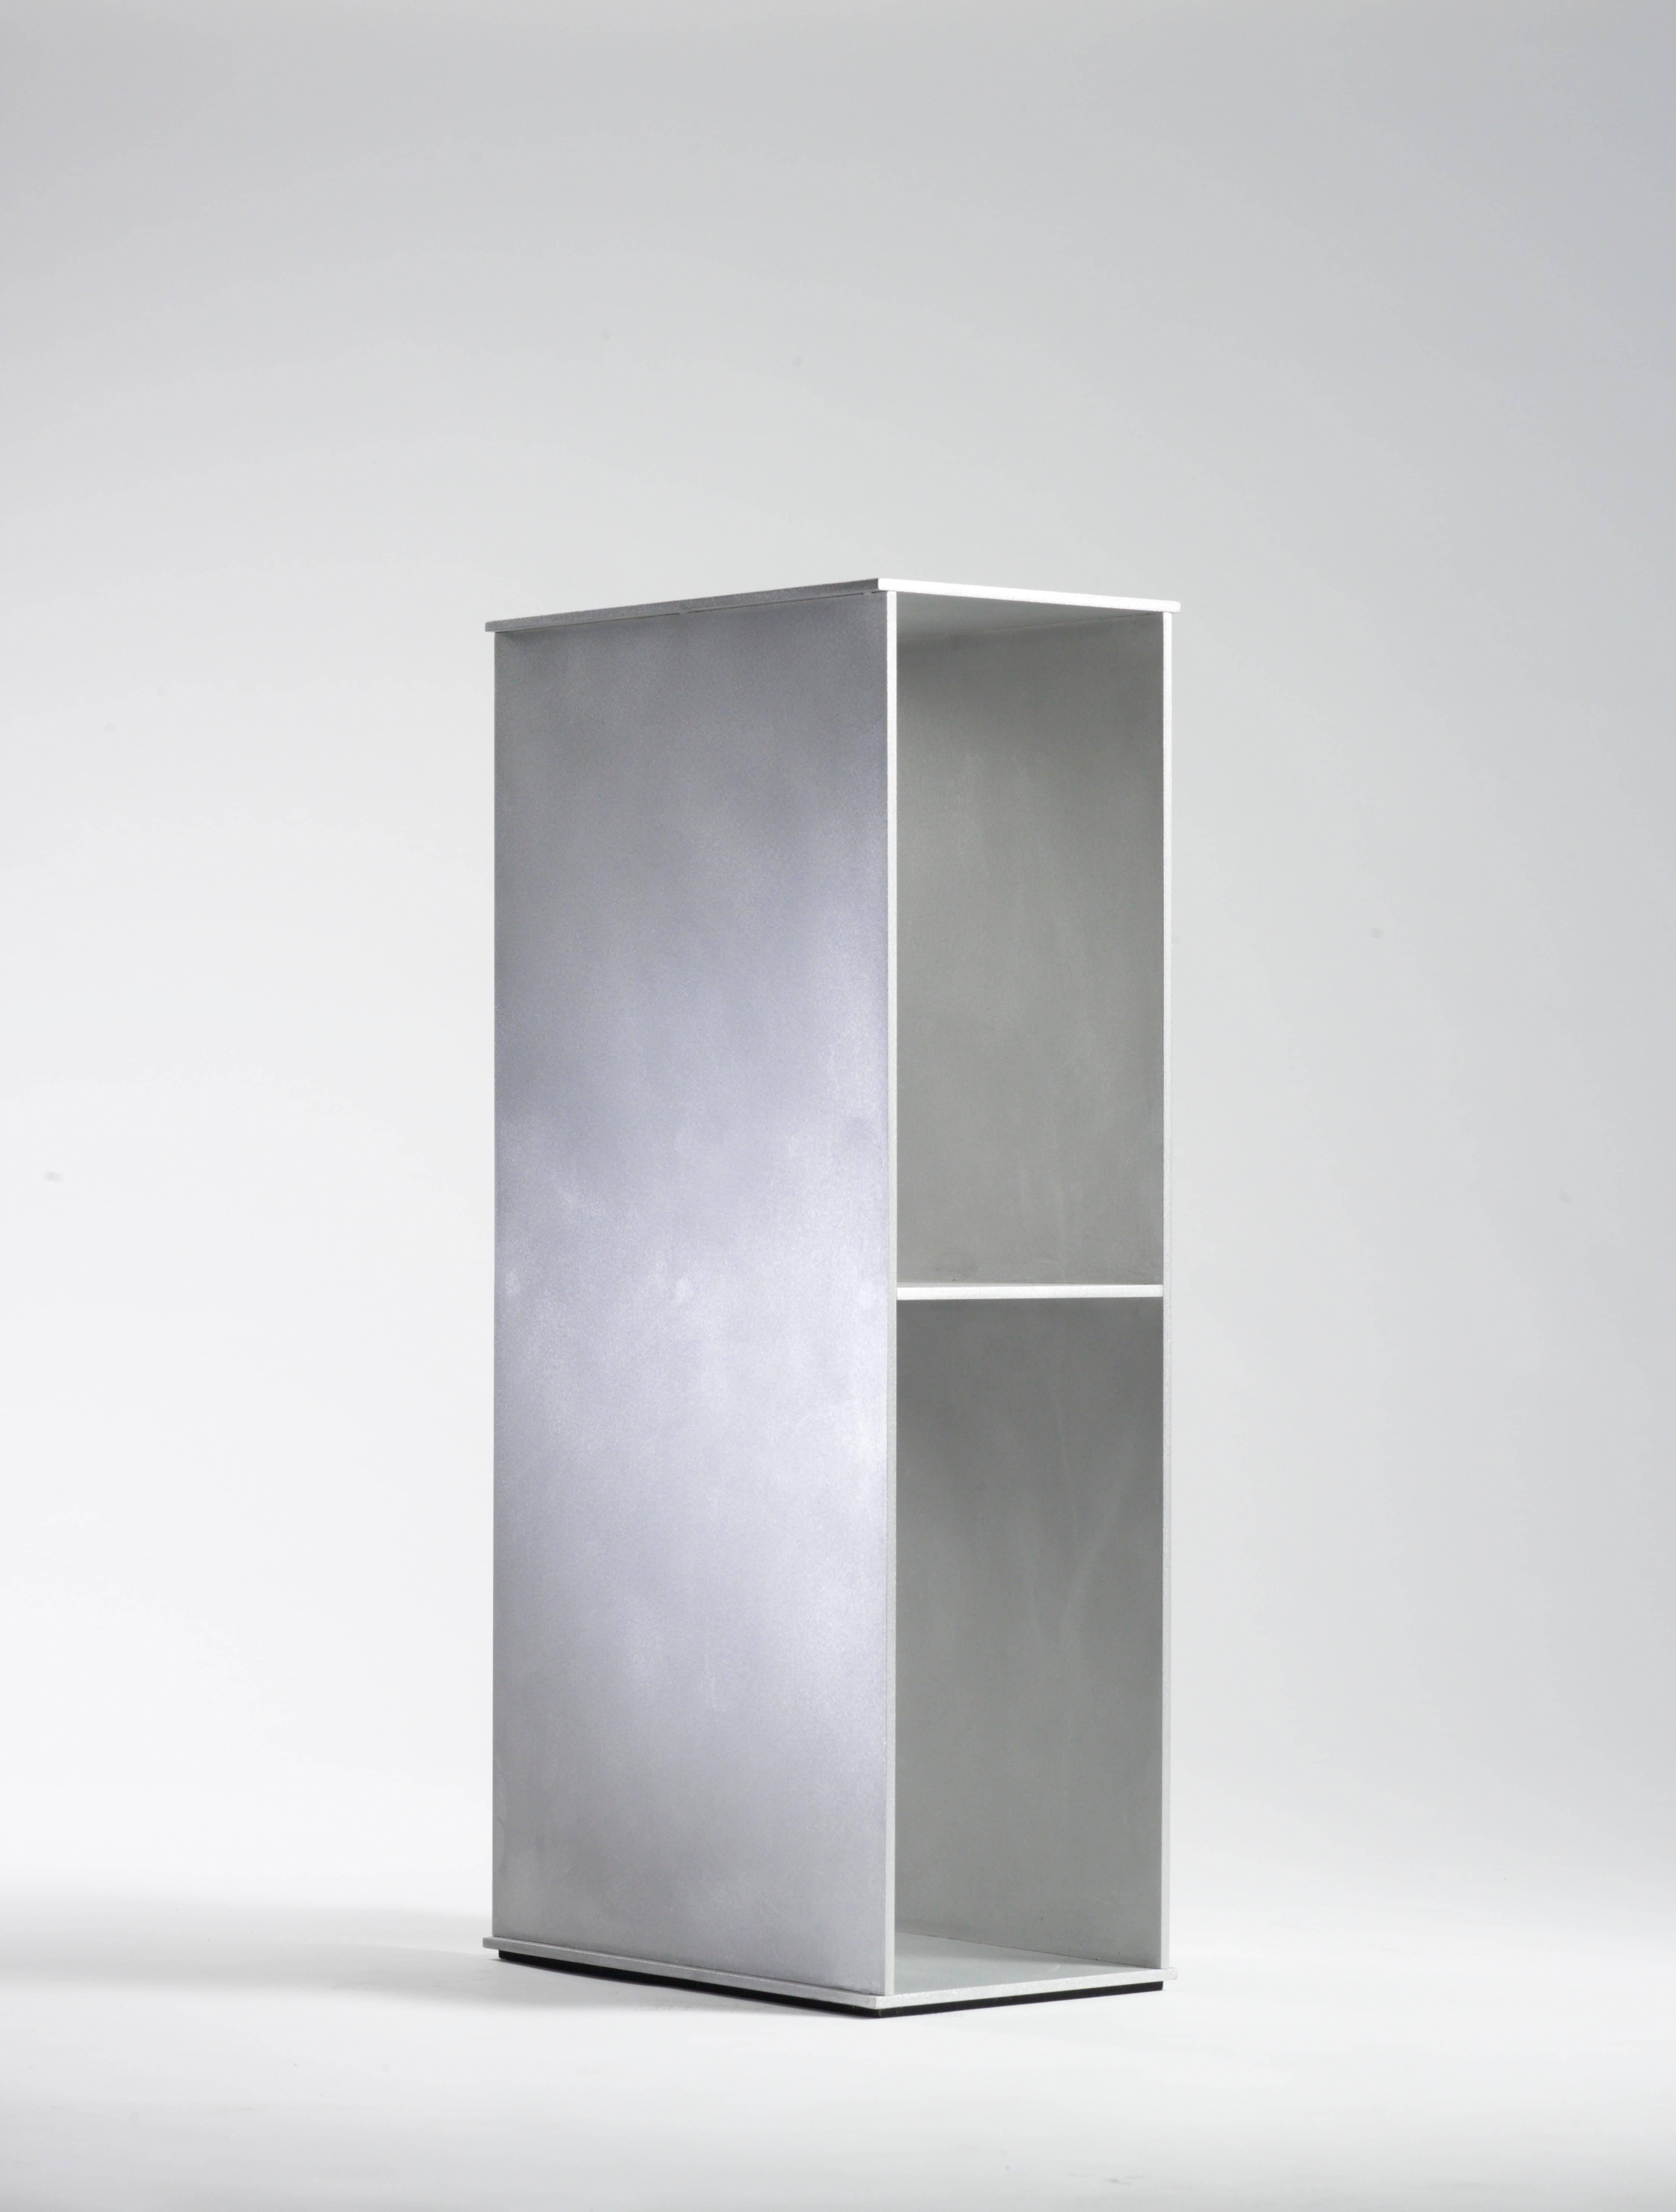 Étagère au sol 2G en plaque d'aluminium de 0,25 pouce d'épaisseur, faisant partie de l'exposition personnelle neuf variations à la galerie Mondo Cane en 2011. Des plaques d'aluminium découpées numériquement s'entrecroisent et sont fusionnées par des